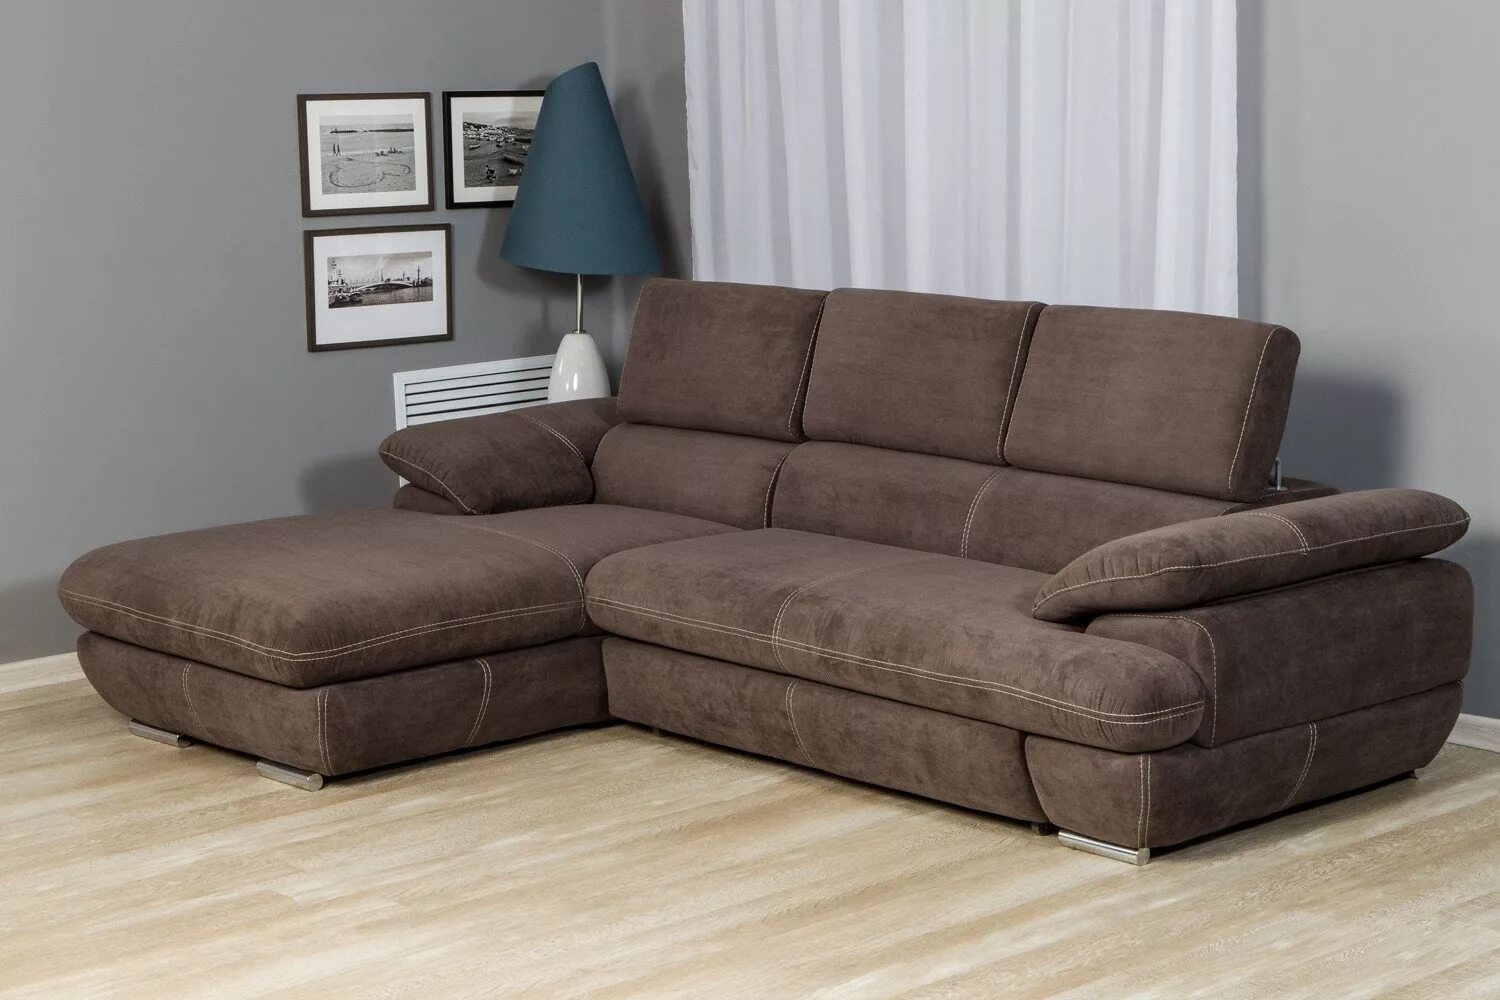 Купить диван. Диван Hoff Саджио. Угловой диван-кровать Саджио. Саджио диван угловой. Диван Саджио коричневый Hoff.